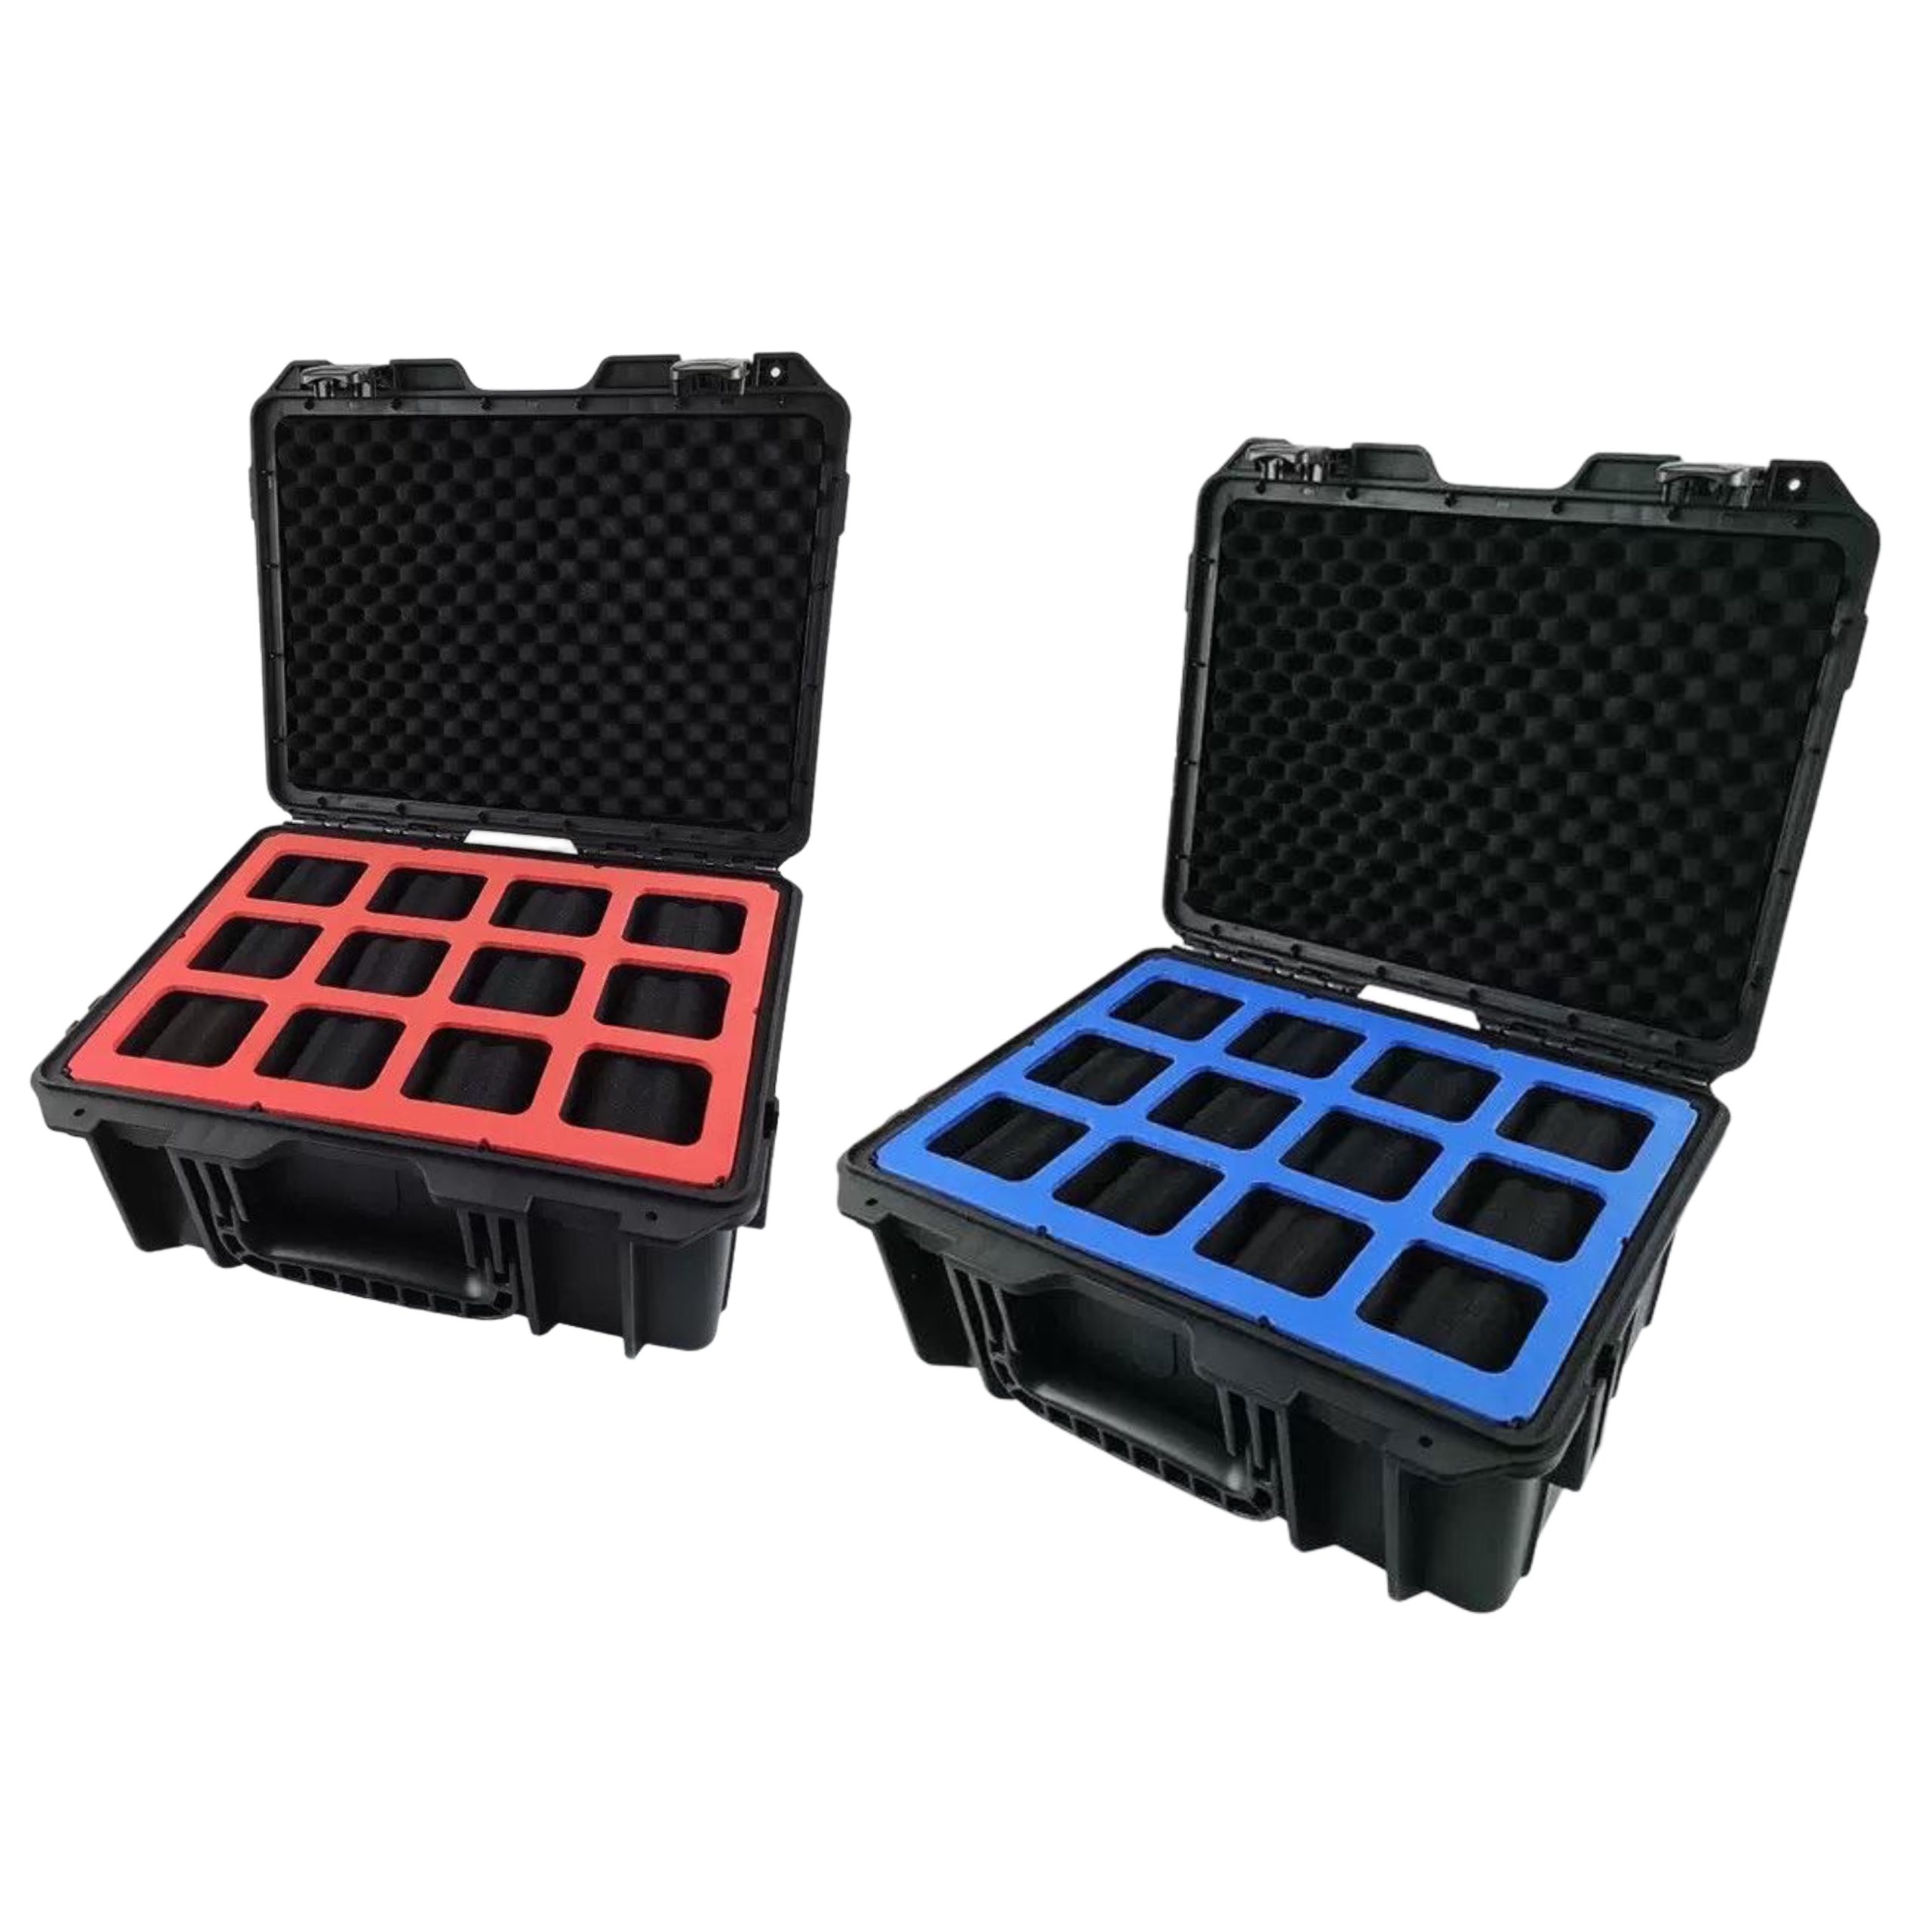 Watch Box Case Plastic Waterproof 12 Slot